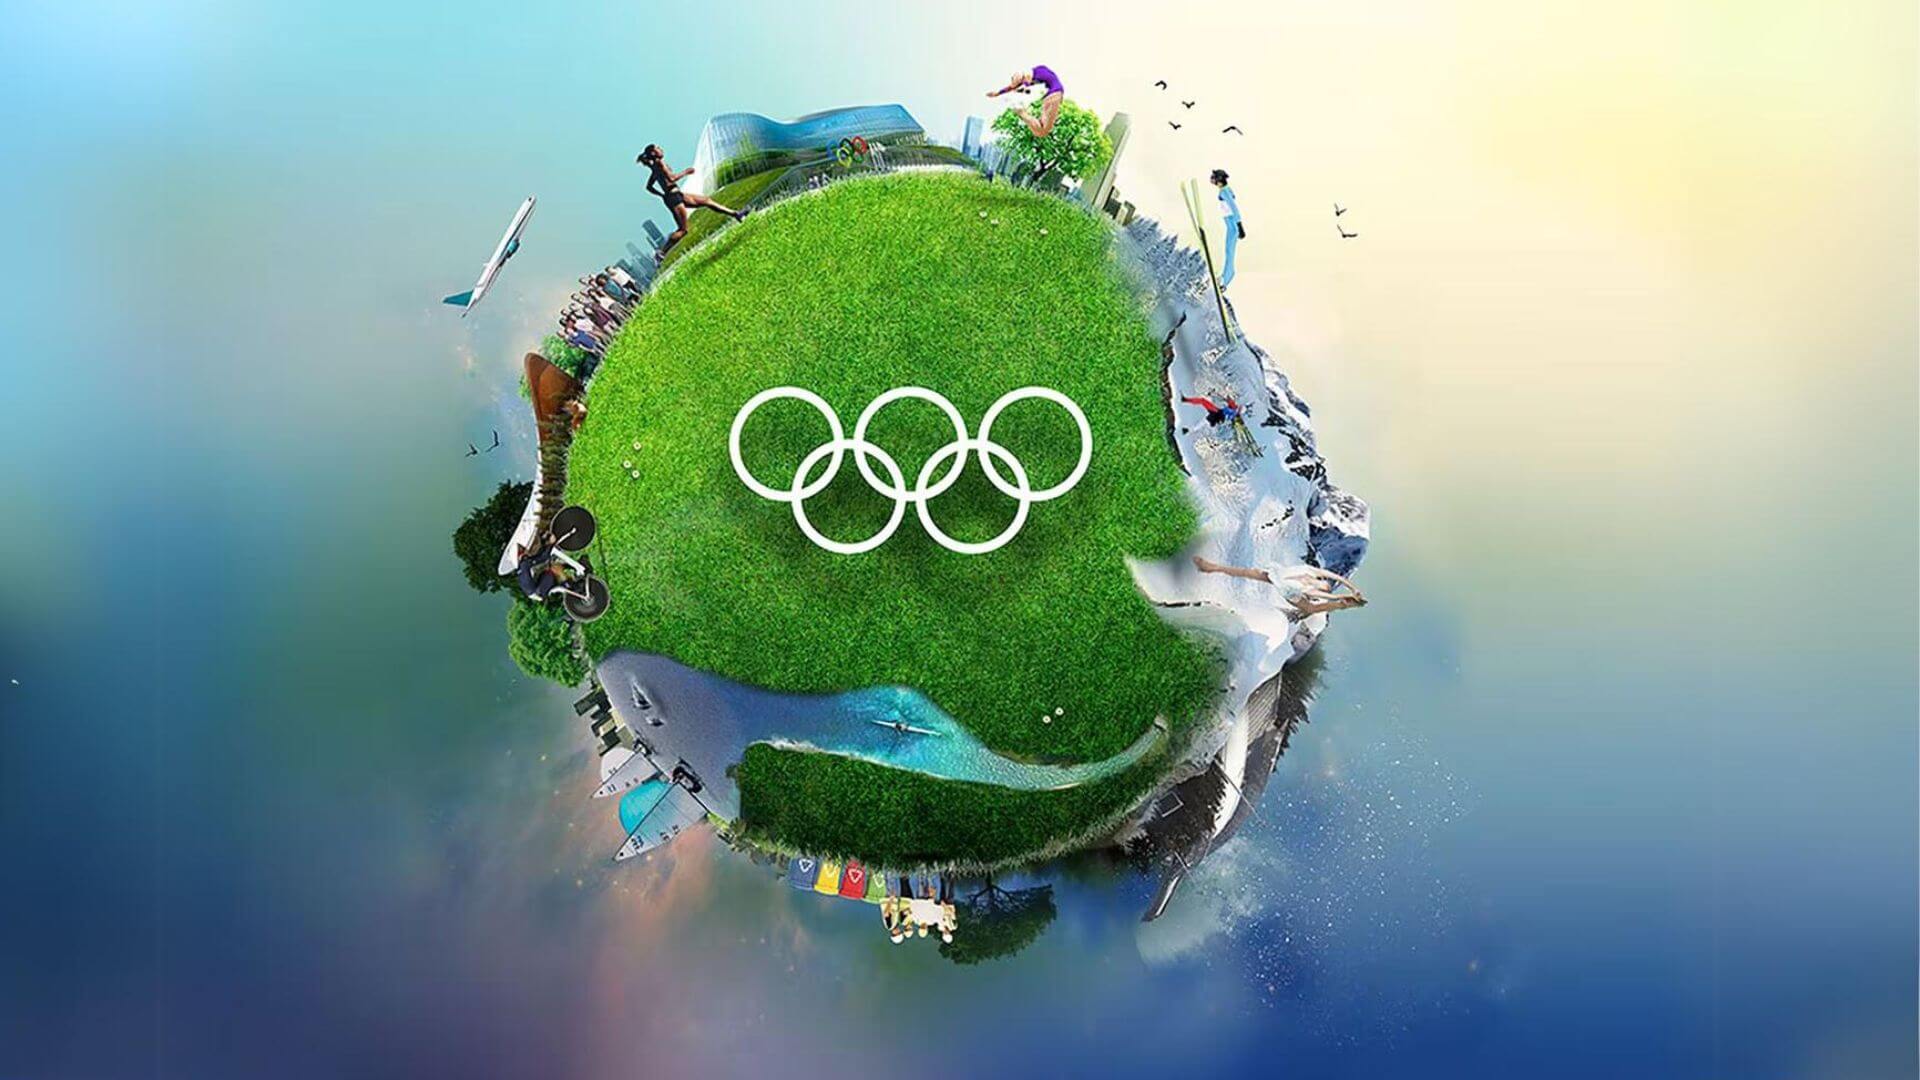 Les Jeux Olympiques de Paris 2024 : Promouvoir la transition